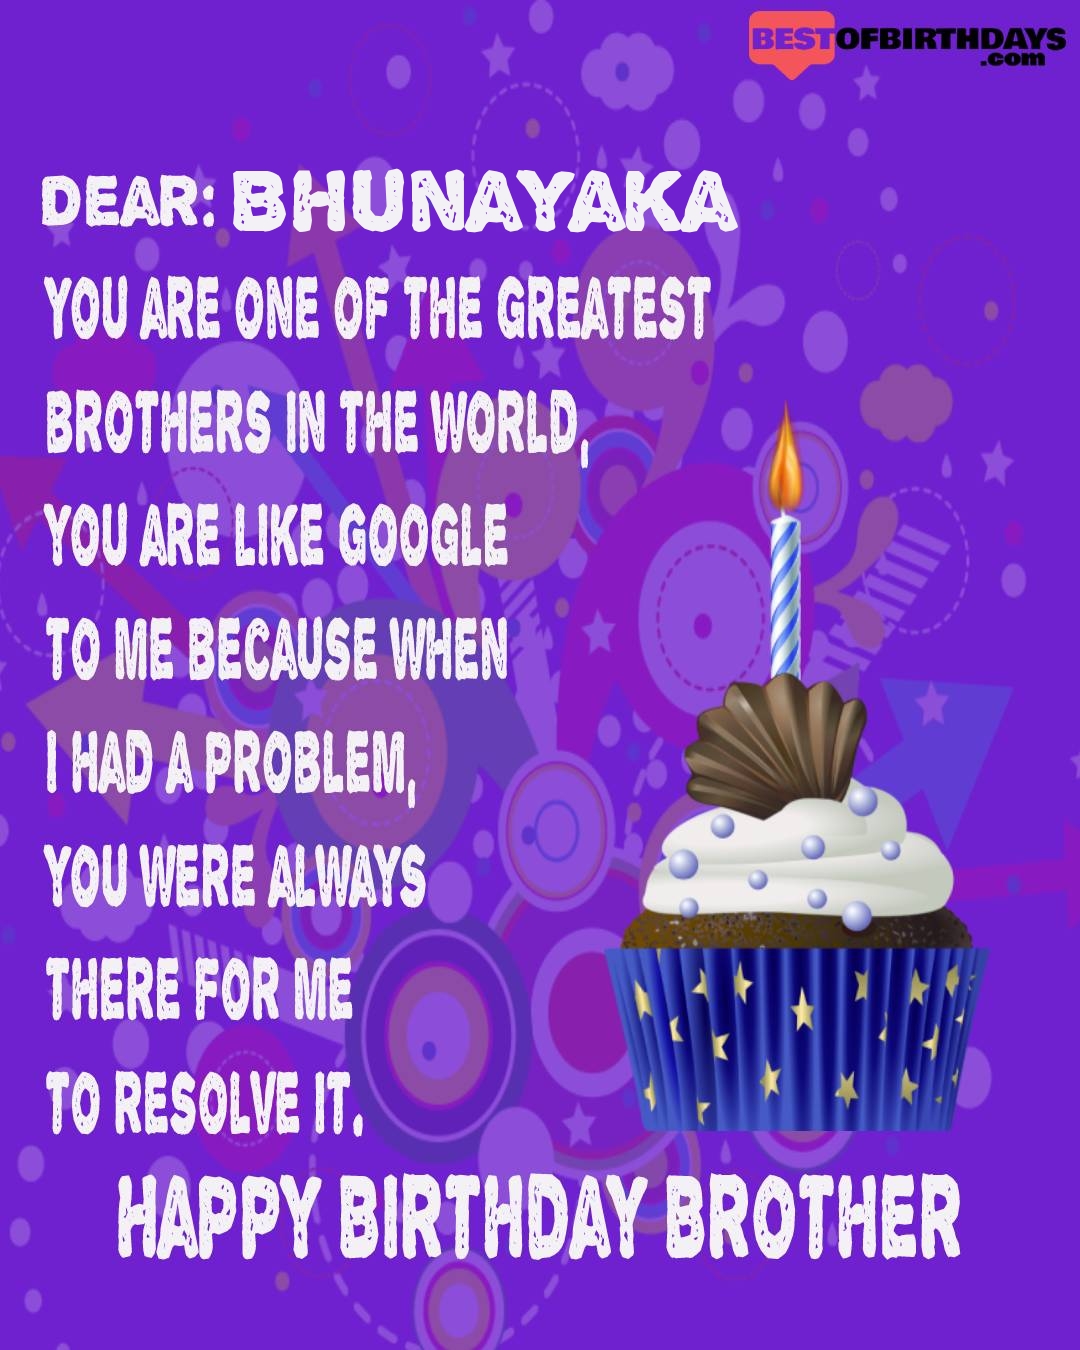 Happy birthday bhunayaka bhai brother bro